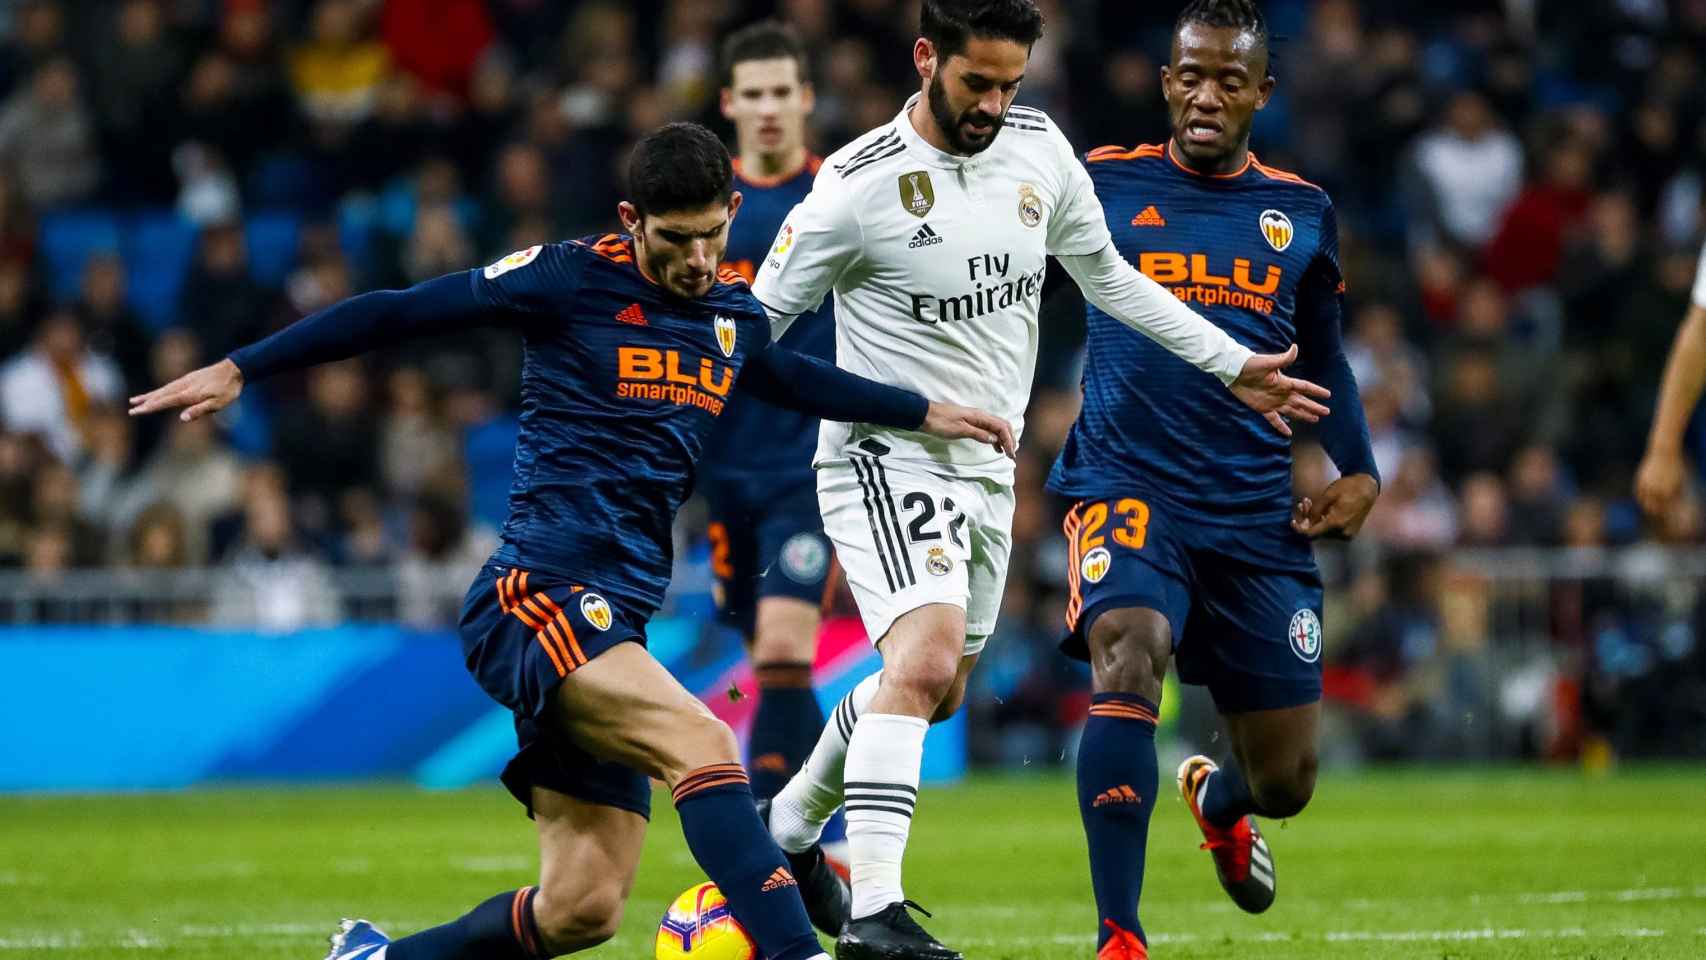 Guedes e Isco disputan un balón en el encuentro entre Real Madrid y Valencia.